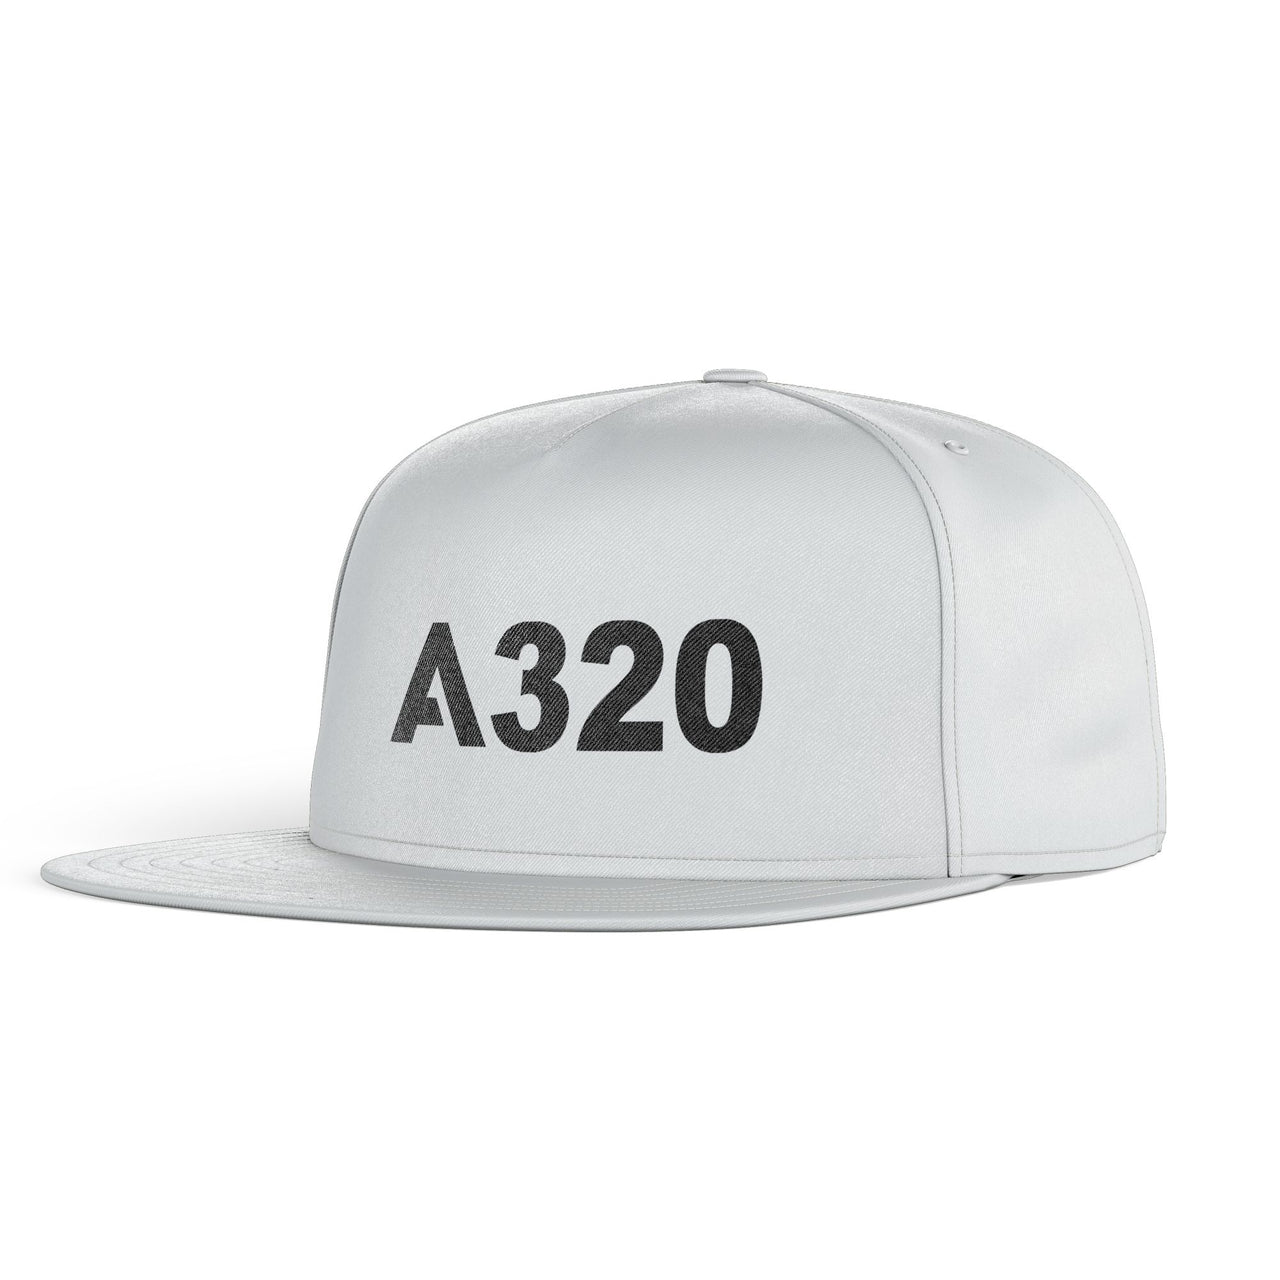 A320 Flat Text Designed Snapback Caps & Hats